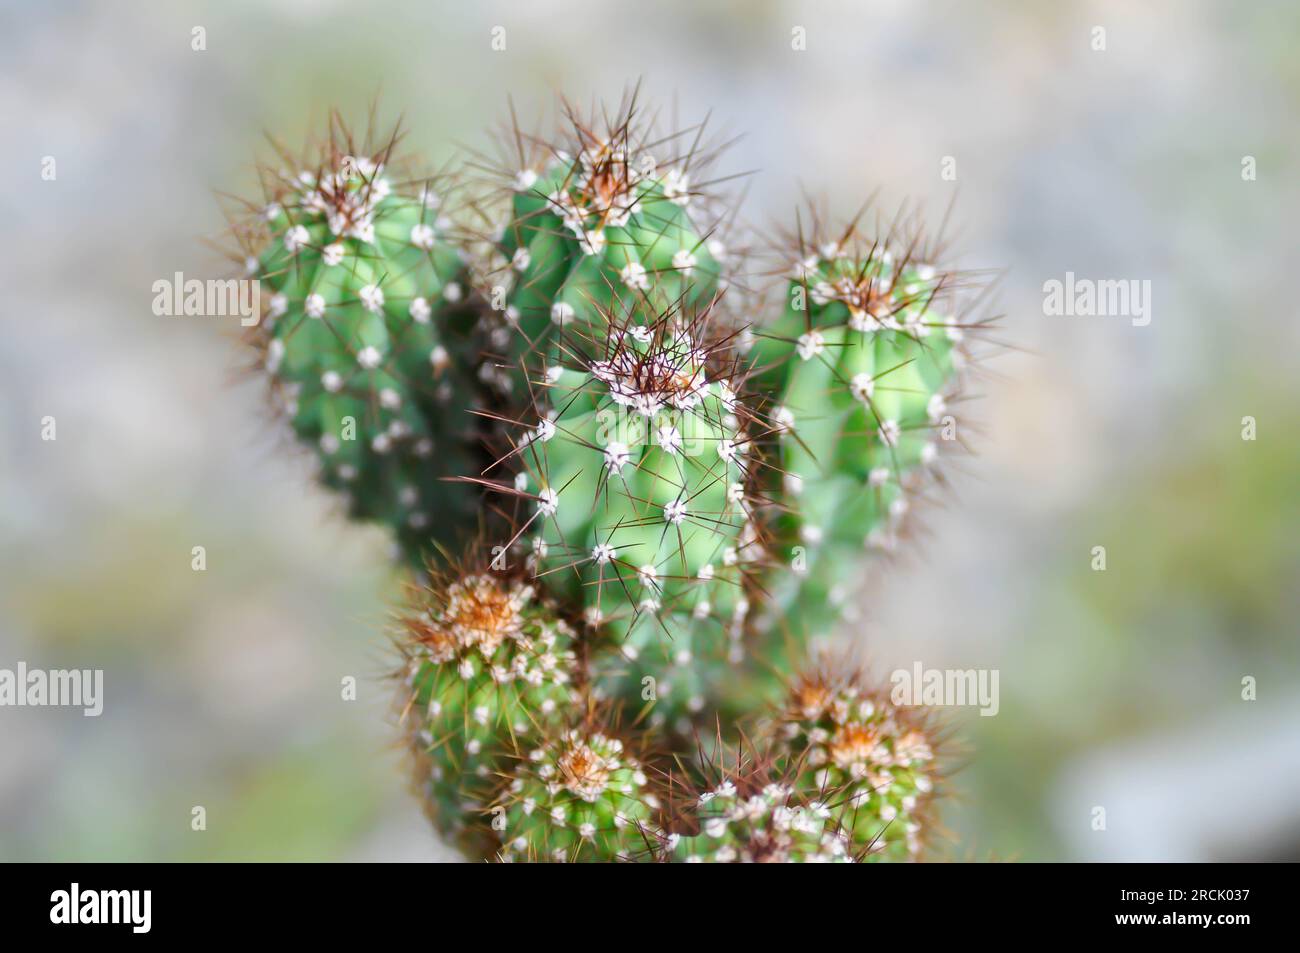 cactus , ERIOCEREUS Harrisia jusbertii or cactus or Fairytale castle or Cereus peruvianus or succulent Stock Photo